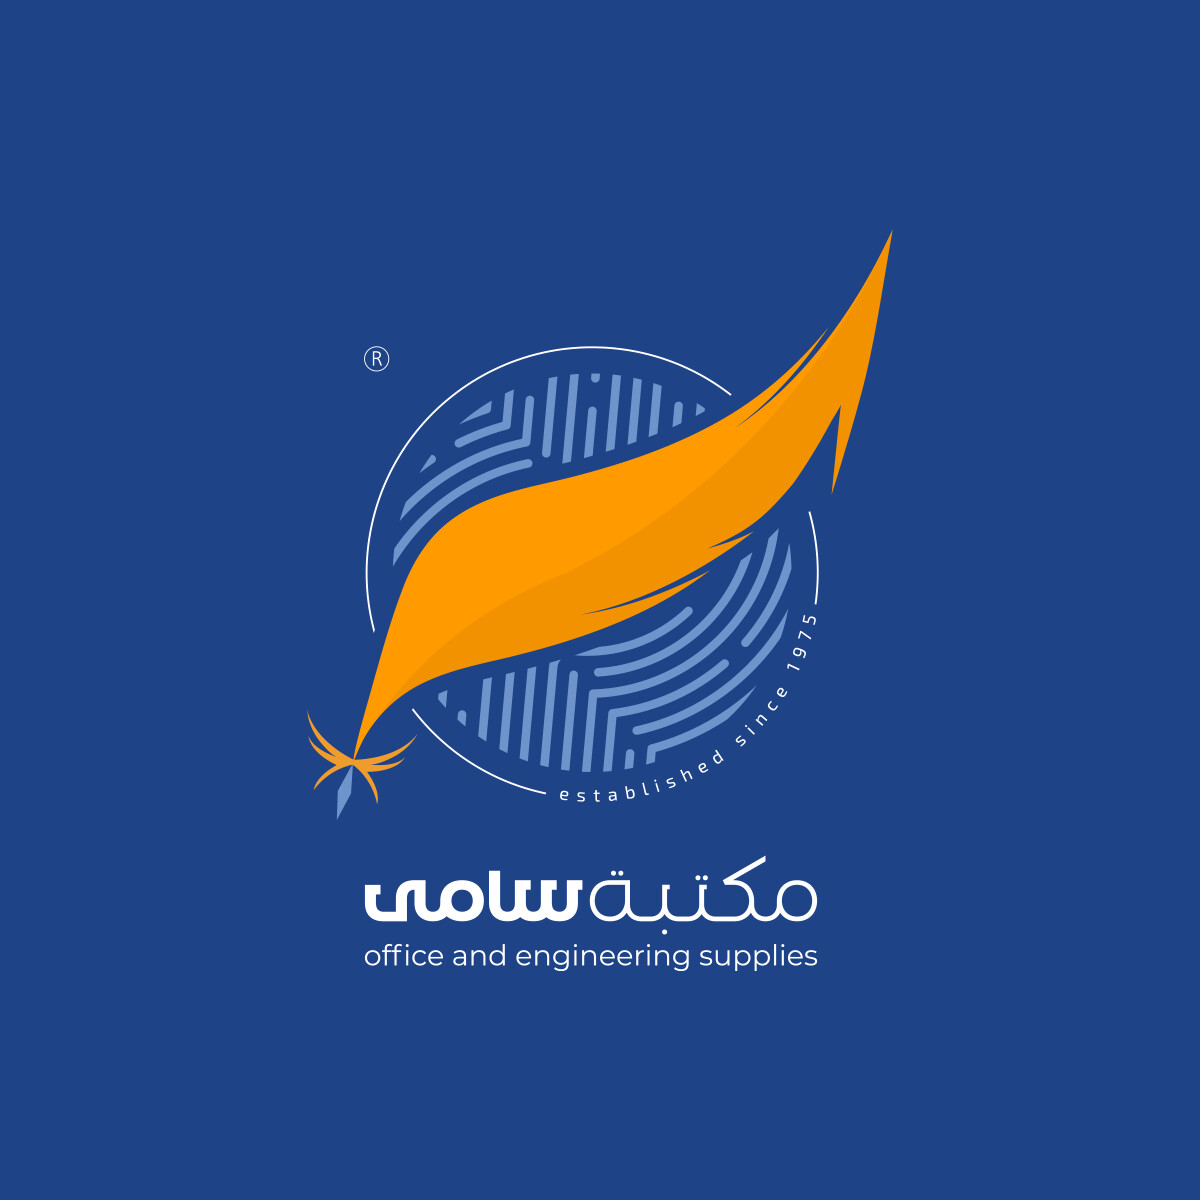 ArtStation - Innovative Logo Design